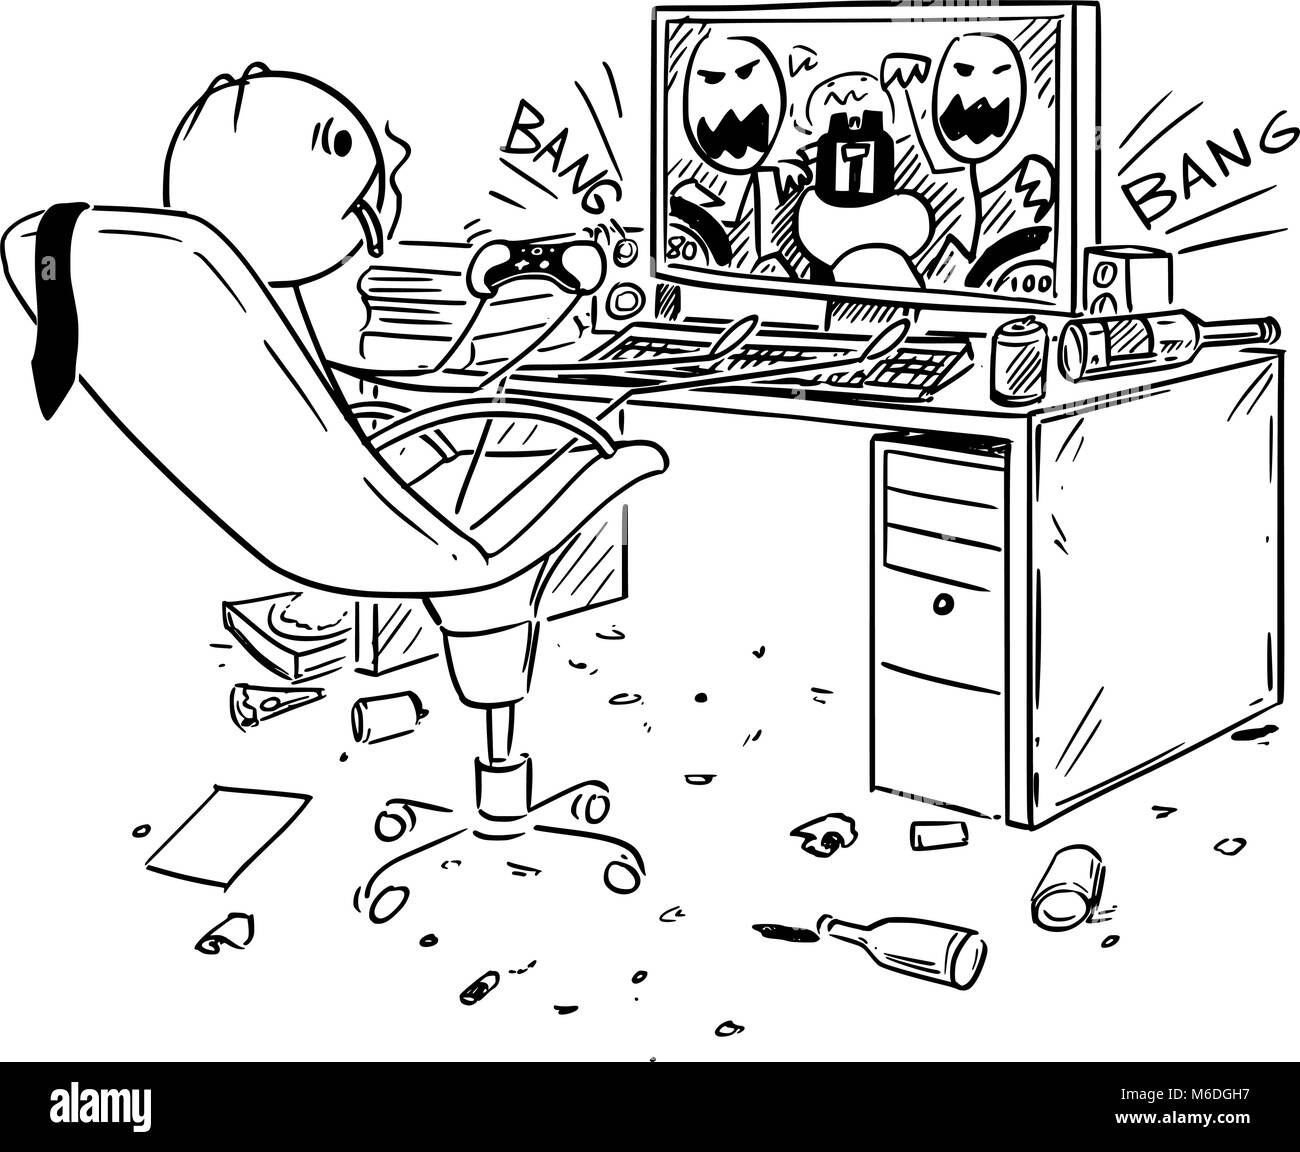 Caricatura del empresario beber, fumar y jugar a juegos de ordenador en el trabajo Ilustración del Vector